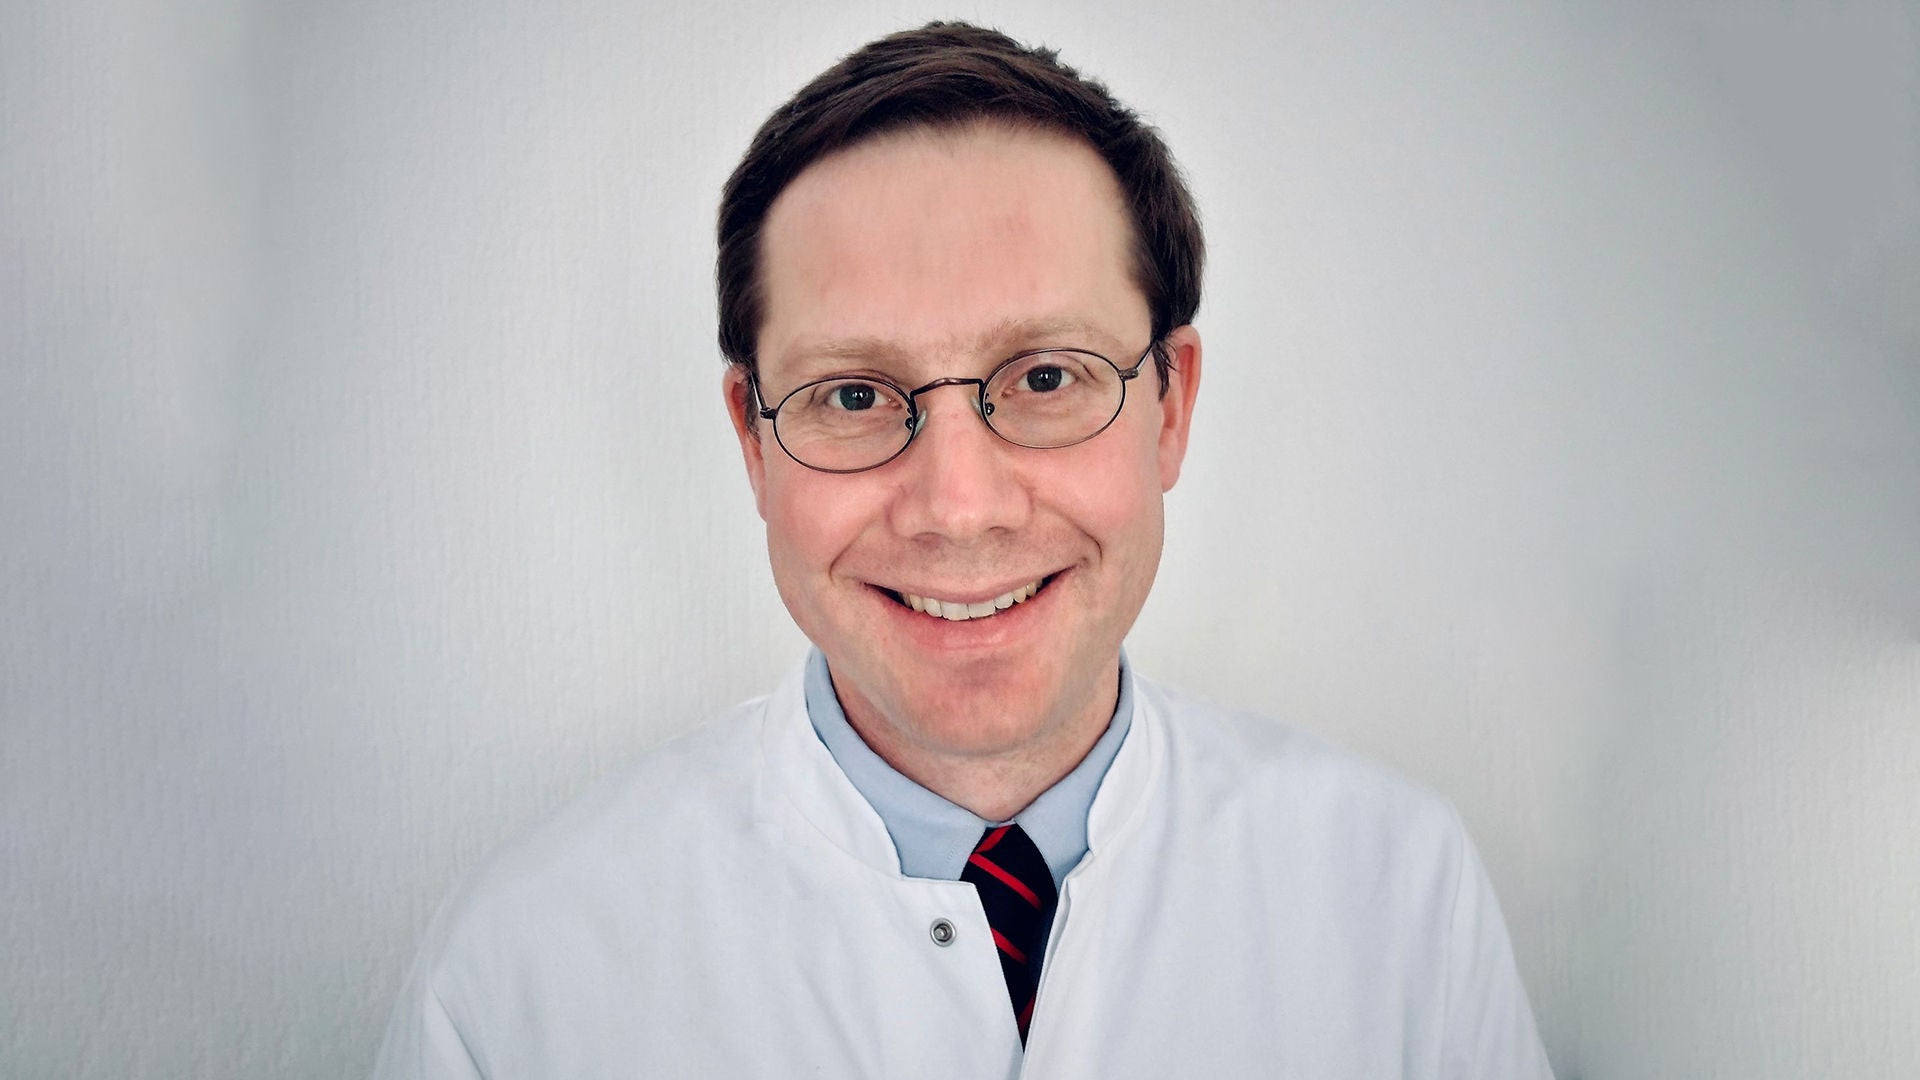 Priv.-Doz. Dr. Bernhard Haring ist Oberarzt in der Kardiologie am Universitätsklinikum des Saarlandes